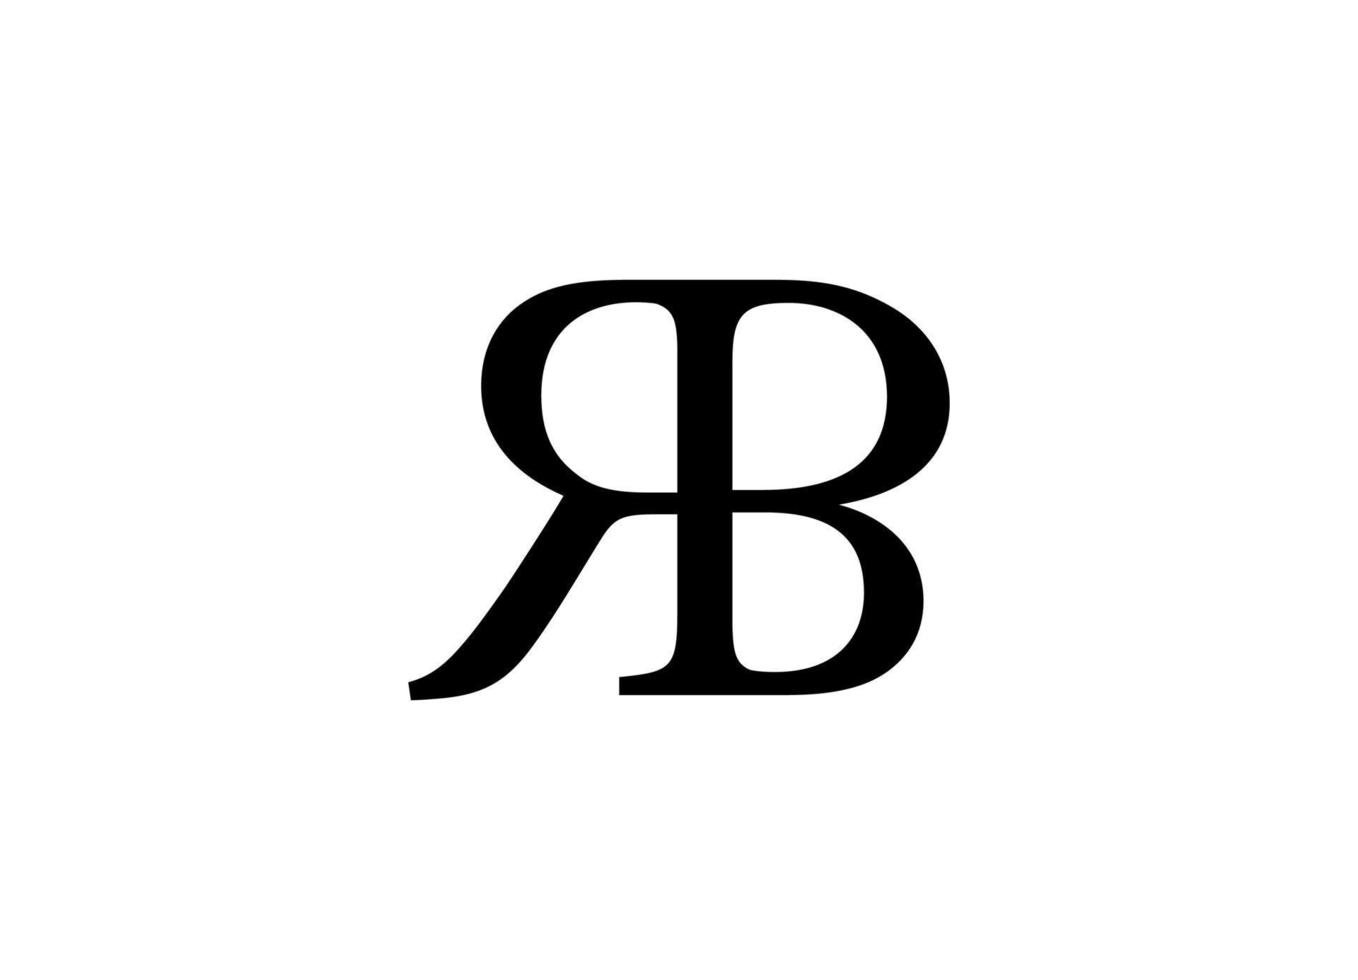 arquivo vetorial gratuito de design de logotipo rb ou br vetor